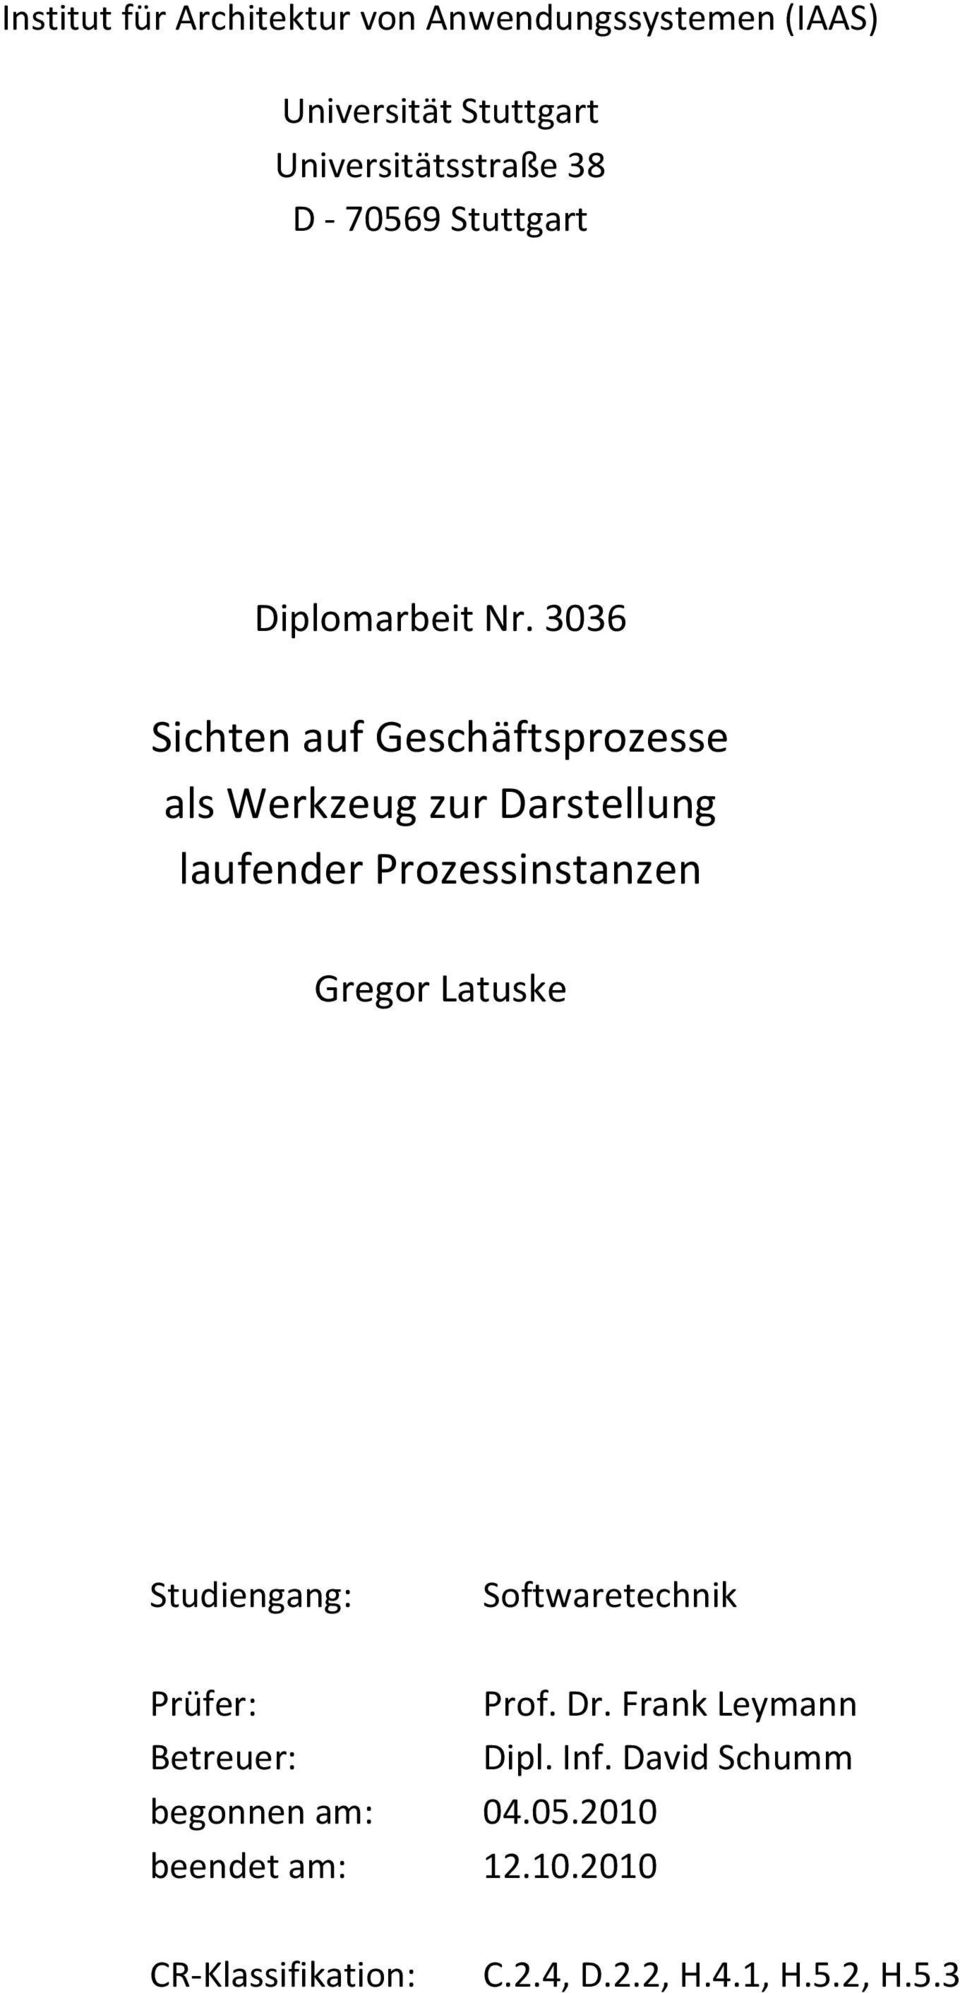 3036 Sichten auf Geschäftsprozesse als Werkzeug zur Darstellung laufender Prozessinstanzen Gregor Latuske